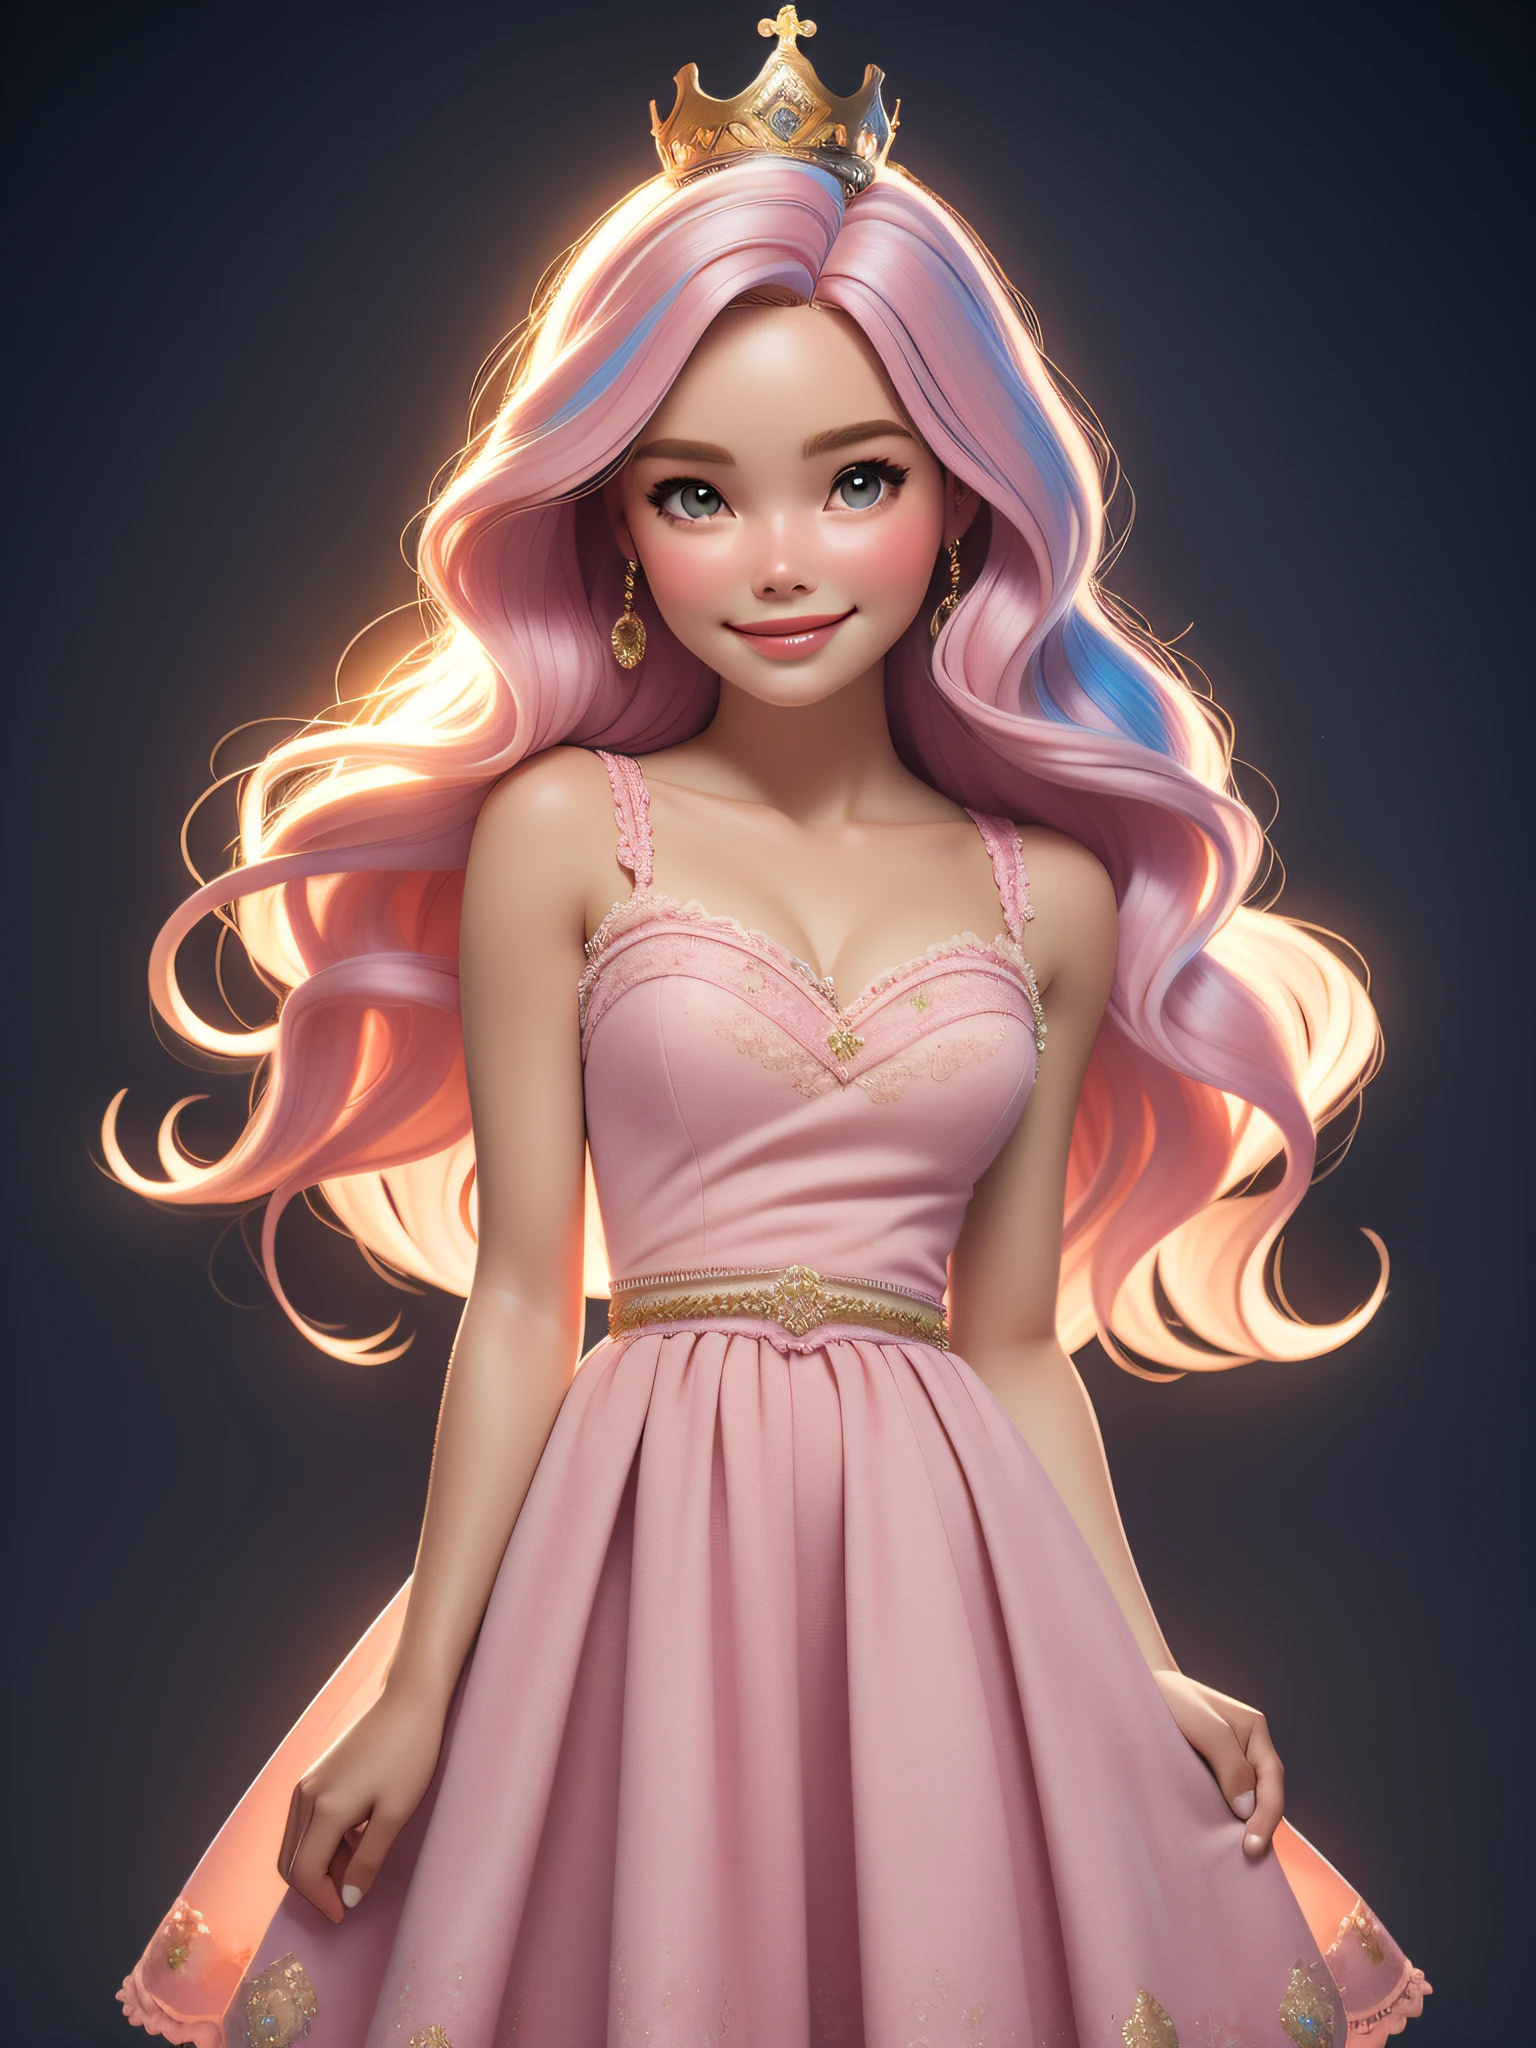 iluminación dinámica, Una princesa Barbie con un precioso vestido rosa., usando una hermosa corona, En el castillo de hadas rosa, cabello rosado, (lindo:1.3), (piel pálida:1.1), (Sonrisa suave:1.1), cara detallada, textura de piel detallada, rayo de sol, por Ilia Kuvshinov, nina masic, iluminación natural, dispersión subsuperficial, florido, ((tiro de vaquero)), perspectiva atmosférica, retina, piel texturizada, anatómicamente correcto, mejor calidad, premiado